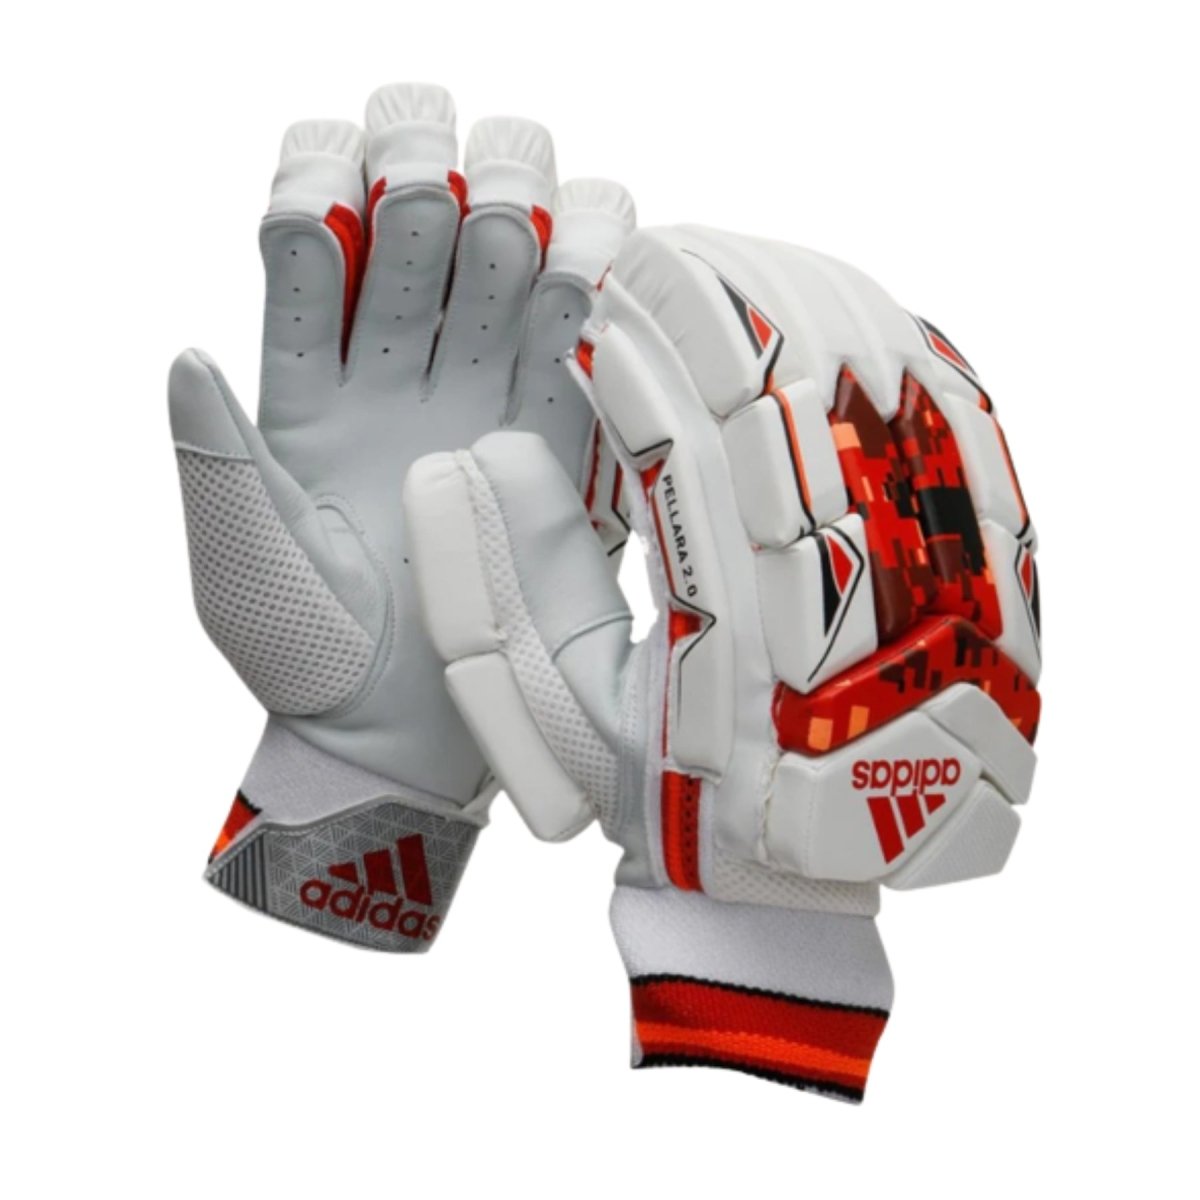 Adidas Pellara 2.0 Red Cricket Batting Gloves